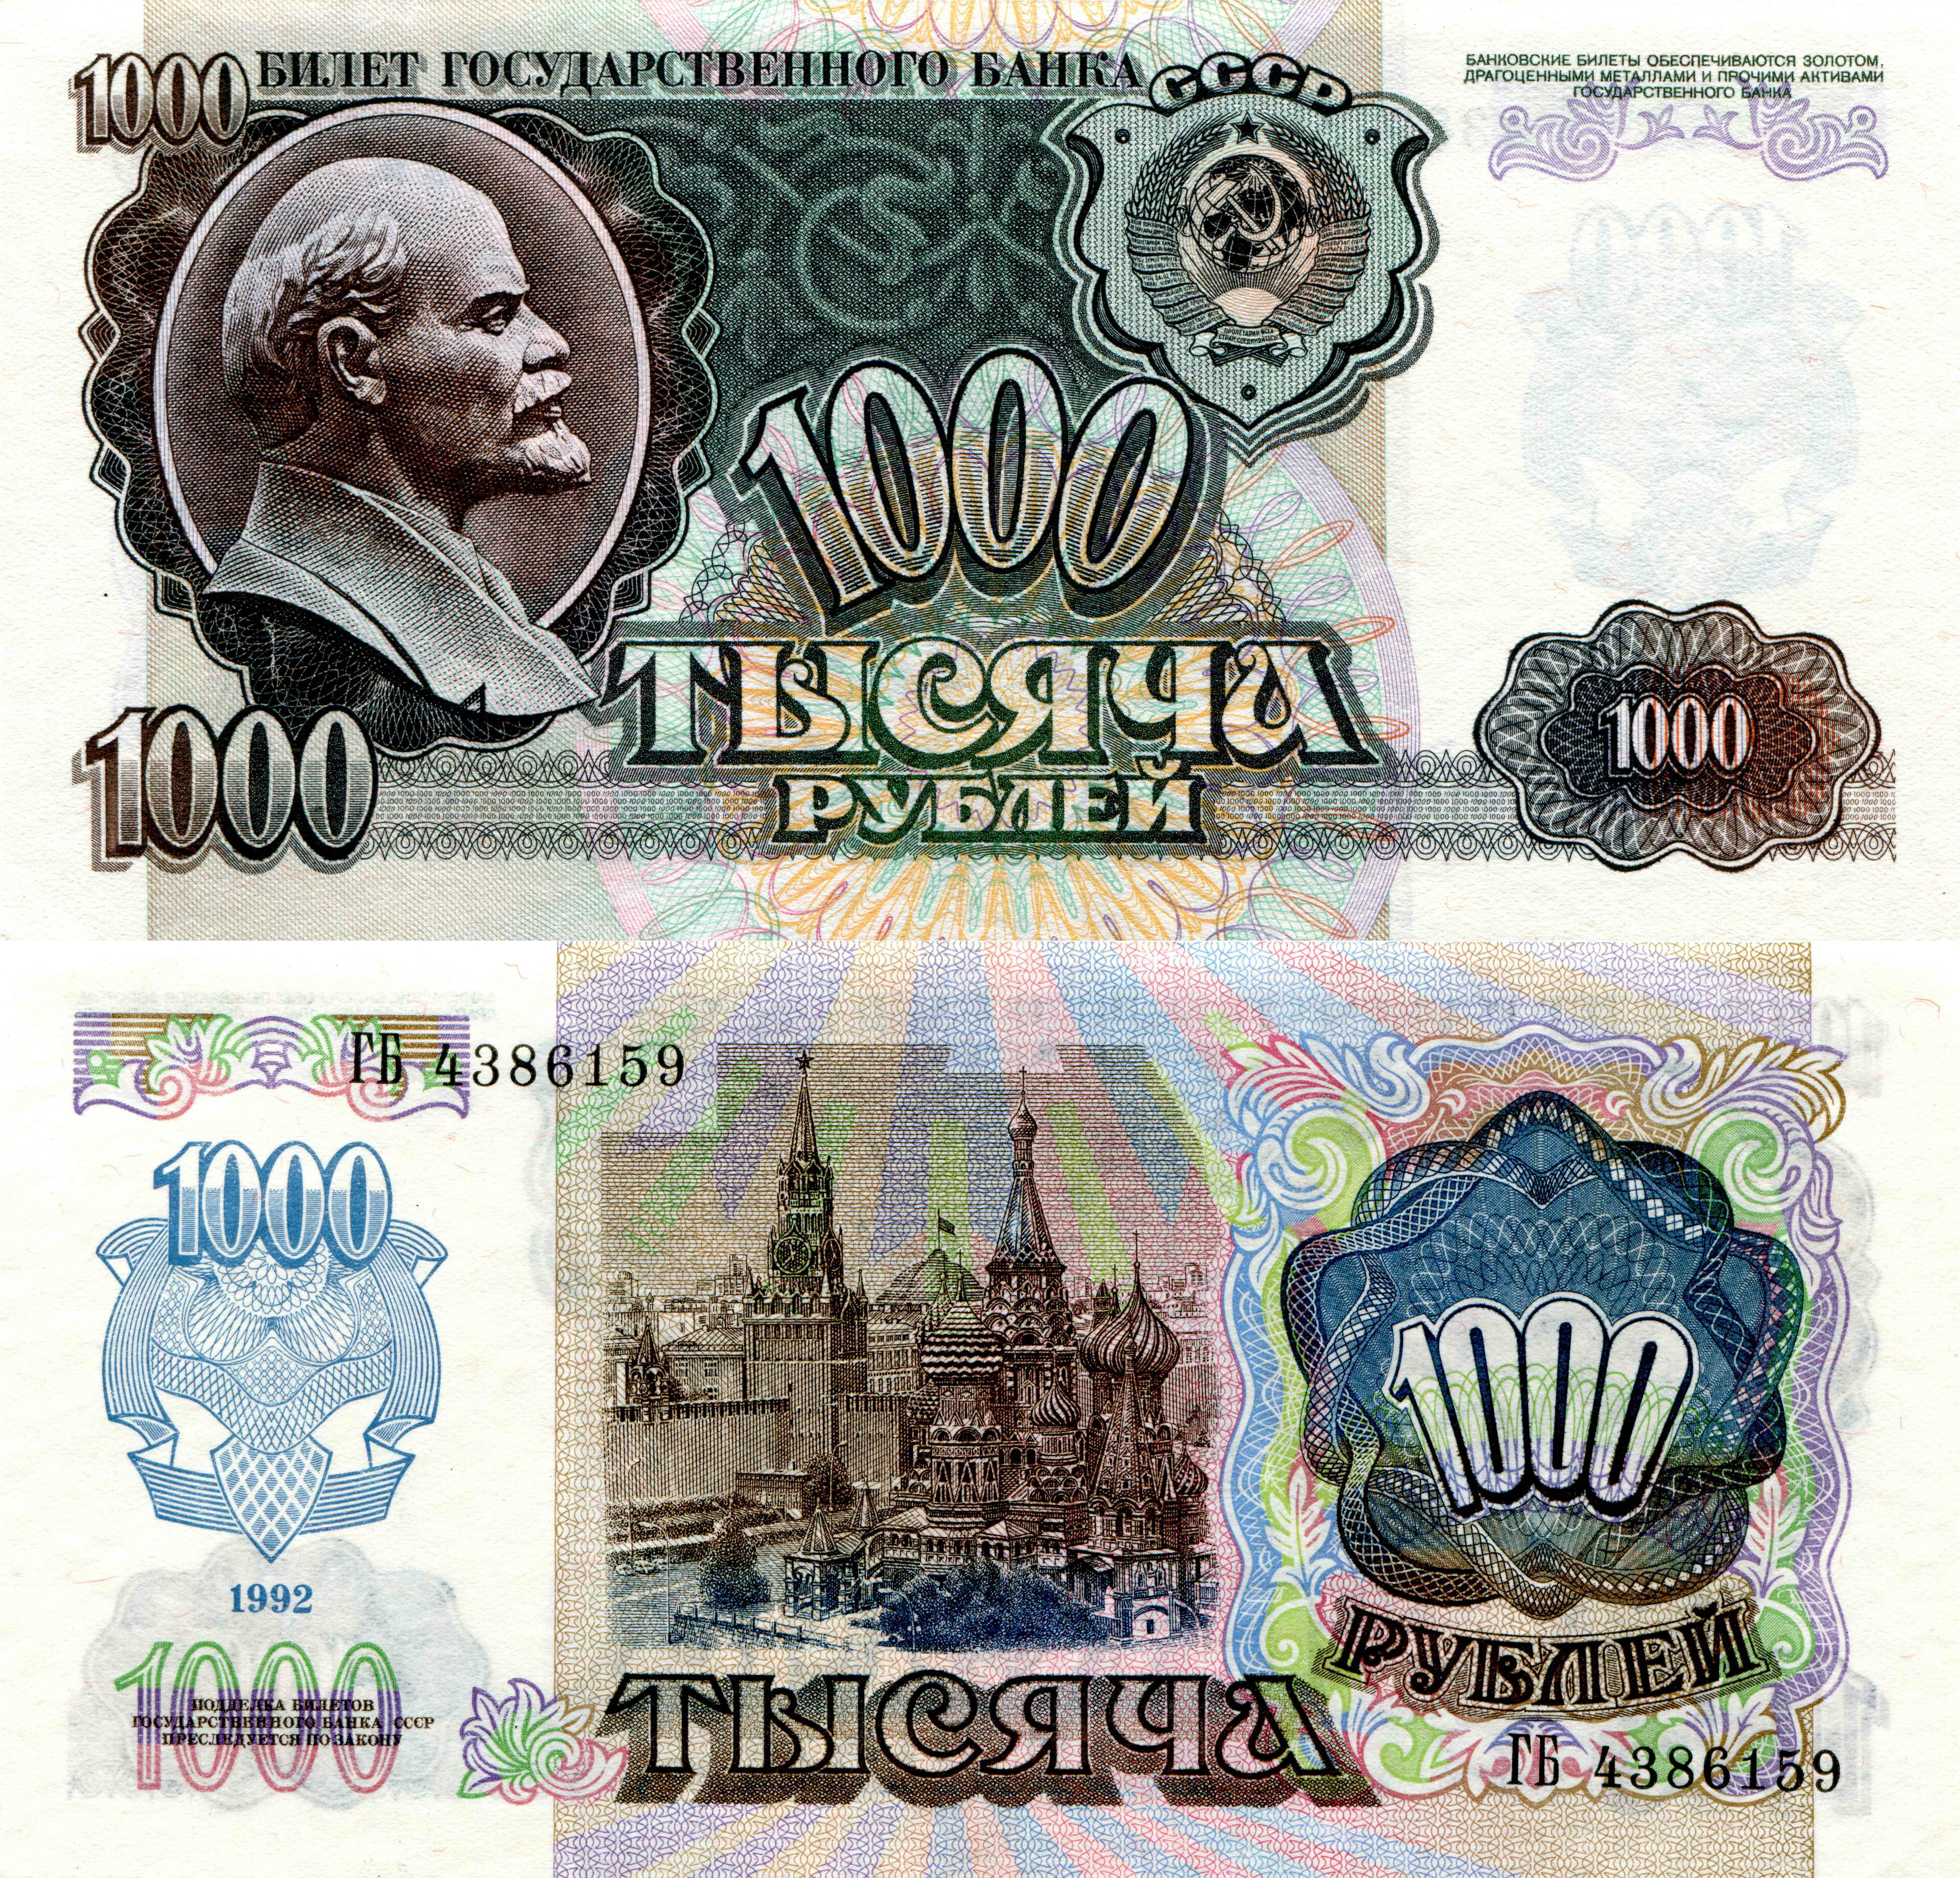 Фотографии Рубли Купюры 1000 1992 Деньги 6814x6529 Банкноты